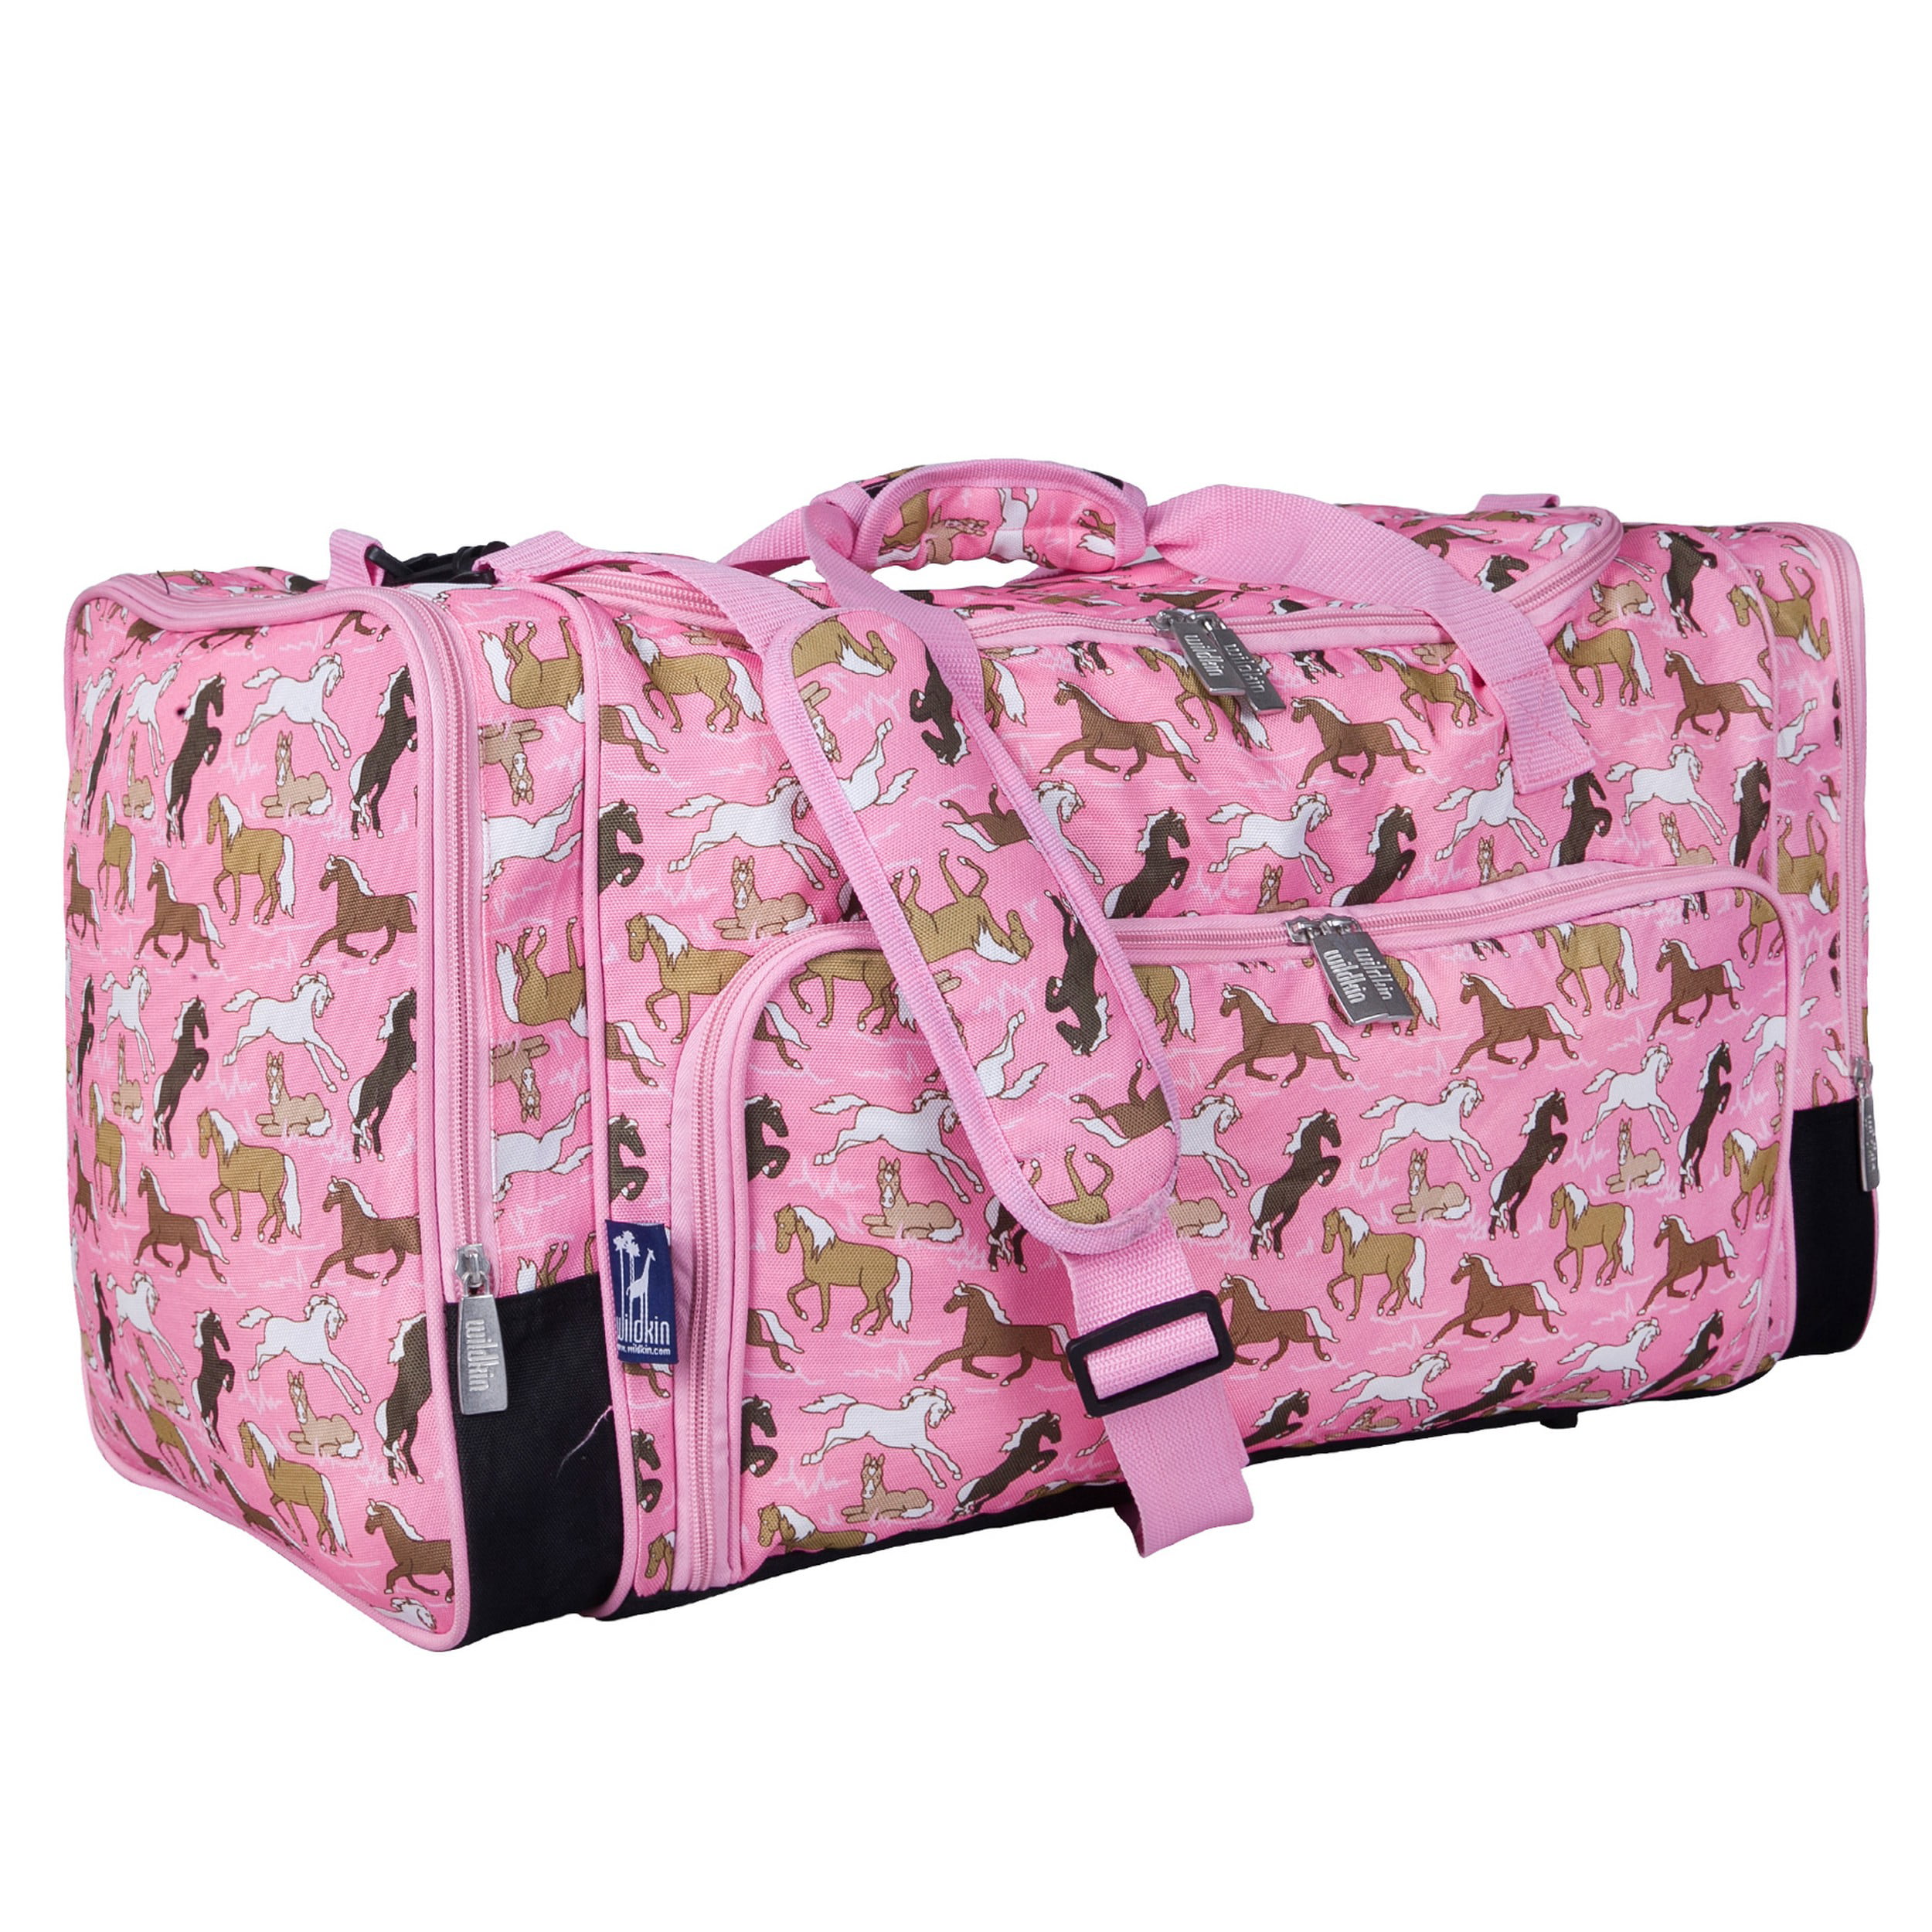 Pink Mermaid Fish Scale Large Travel Duffel Bag Waterproof Weekend Bag with Strap 